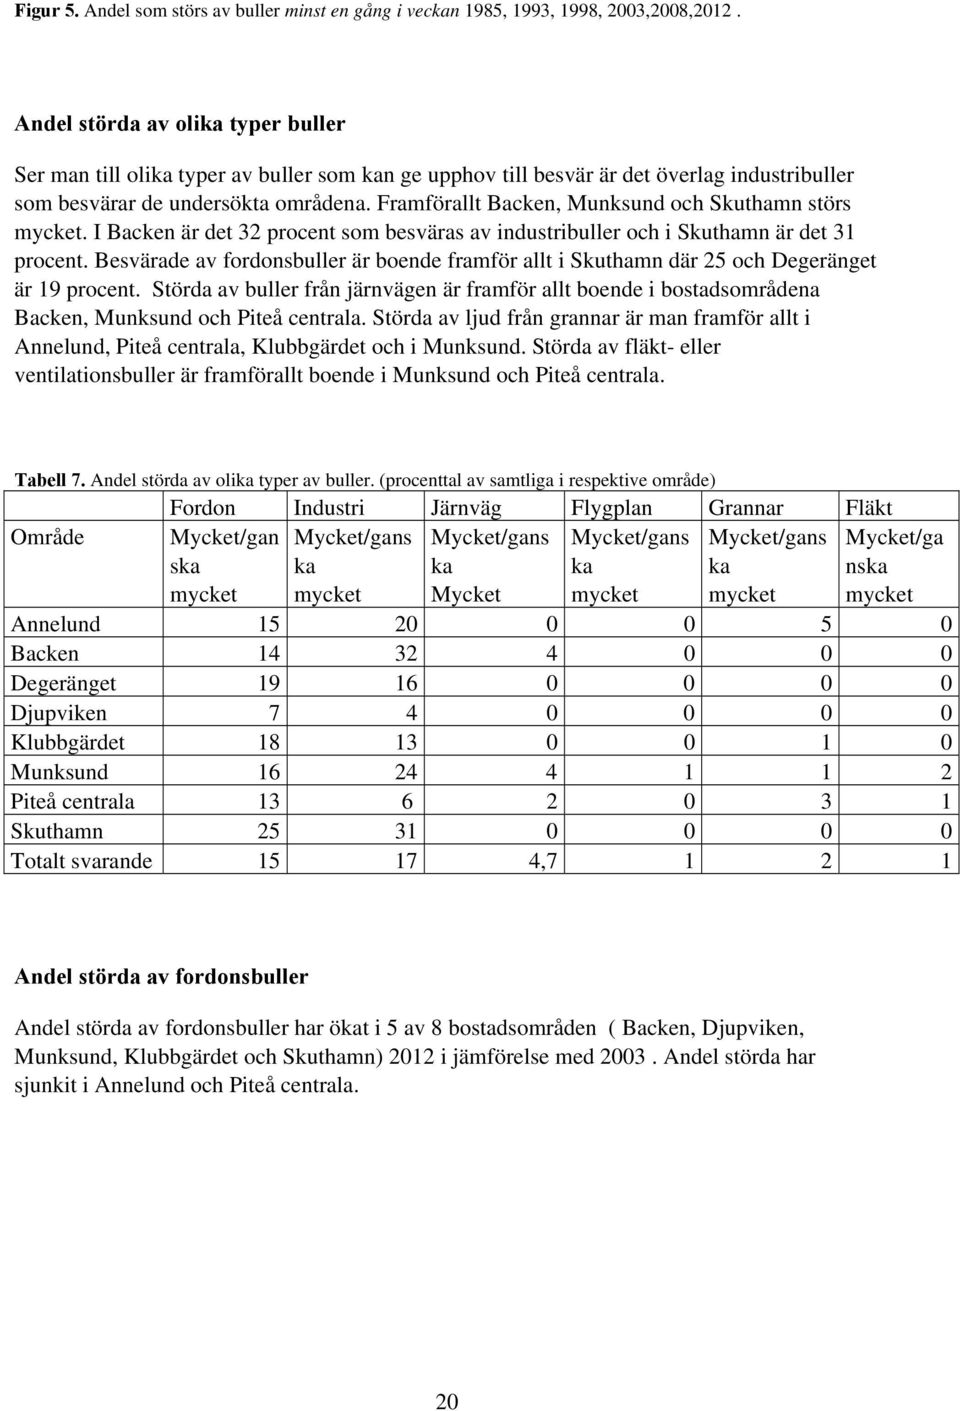 Framförallt Backen, Munksund och Skuthamn störs mycket. I Backen är det 32 procent som besväras av industribuller och i Skuthamn är det 31 procent.